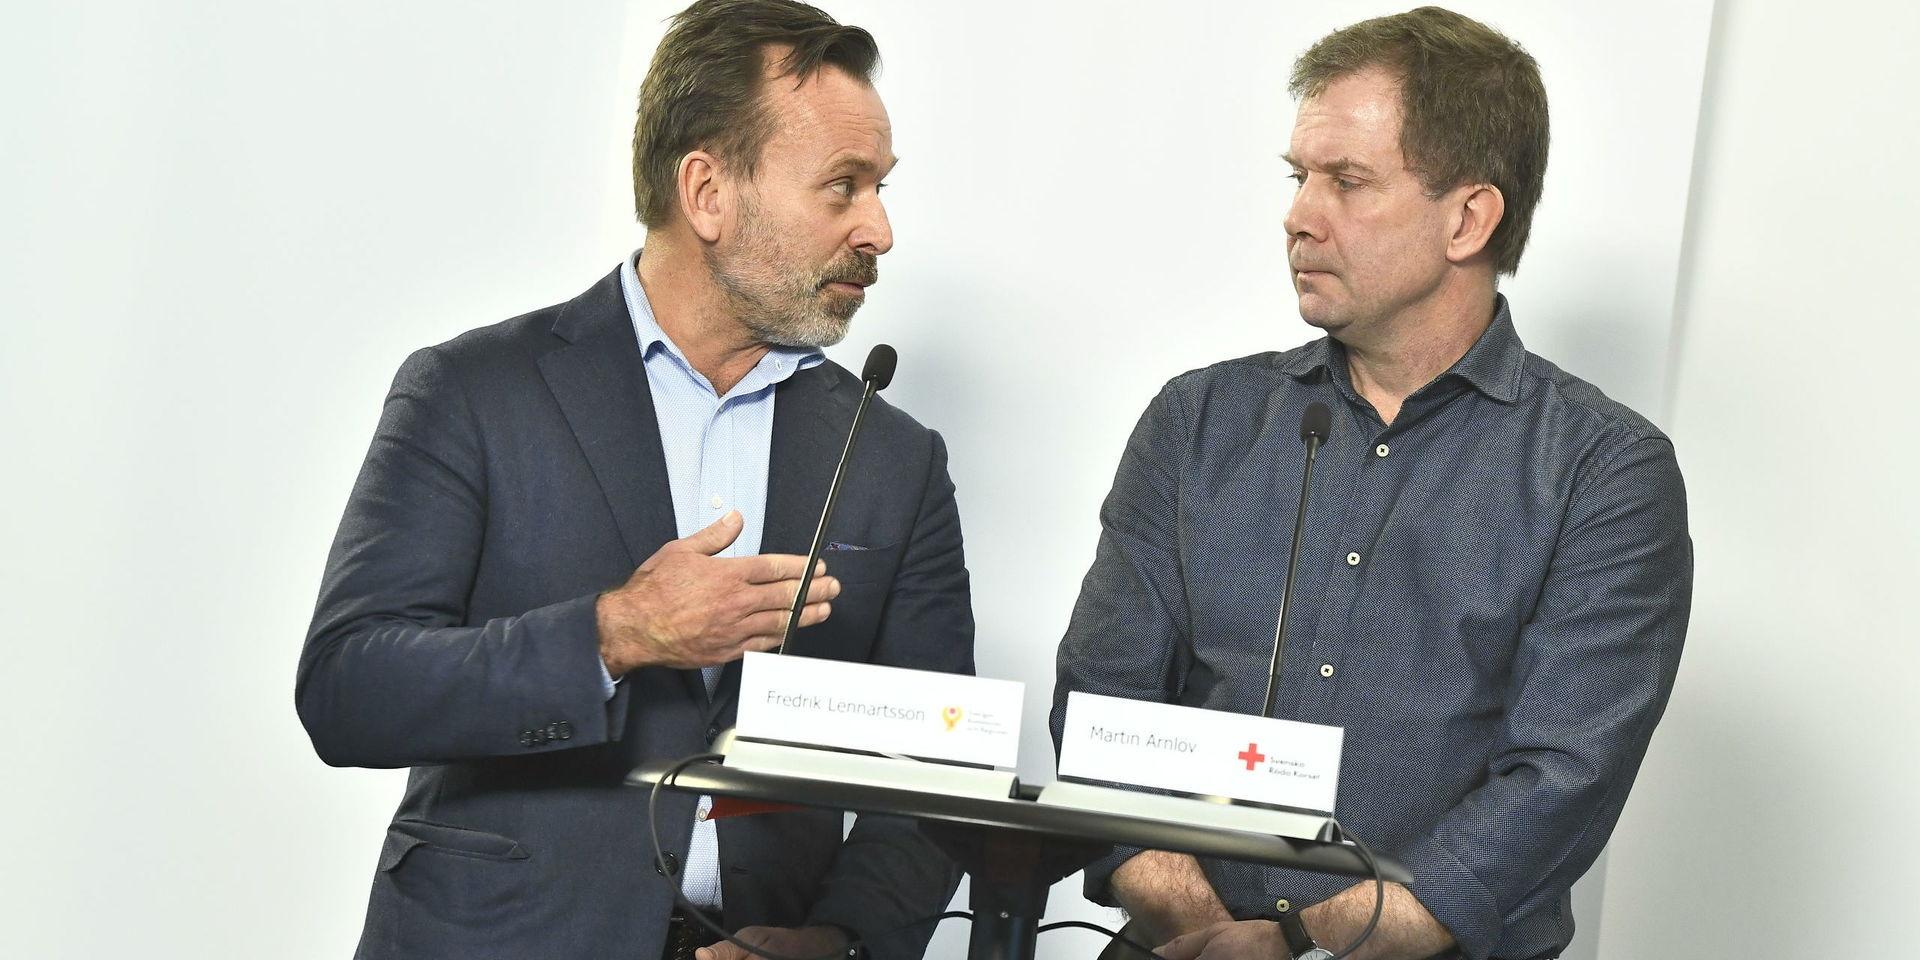 Fredrik Lennartsson, Sveriges kommuner och regioner, och Martin Årnlöv, Röda Korset, var med och presenterade det nya initiativet på en pressträff på onsdagen.